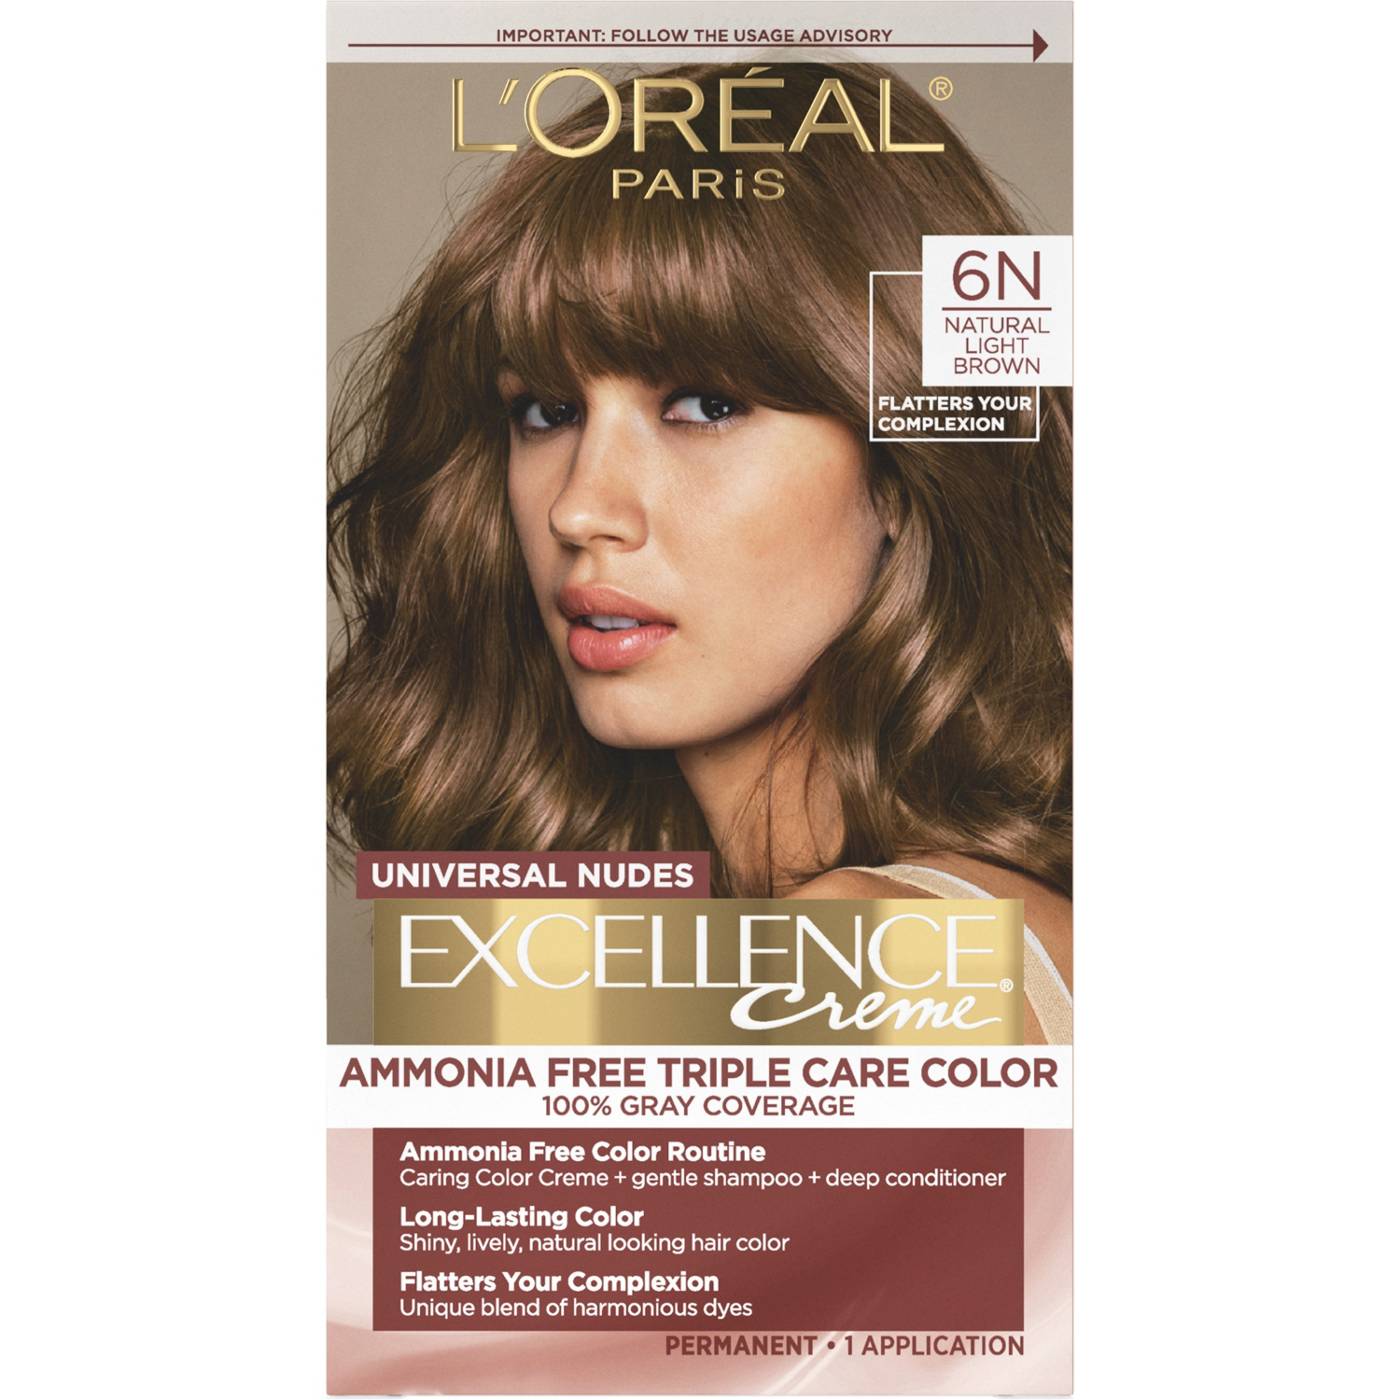 L'Oréal Paris Universal Nudes Excellence Creme Hair Color -6N Natural Light Brown; image 1 of 2